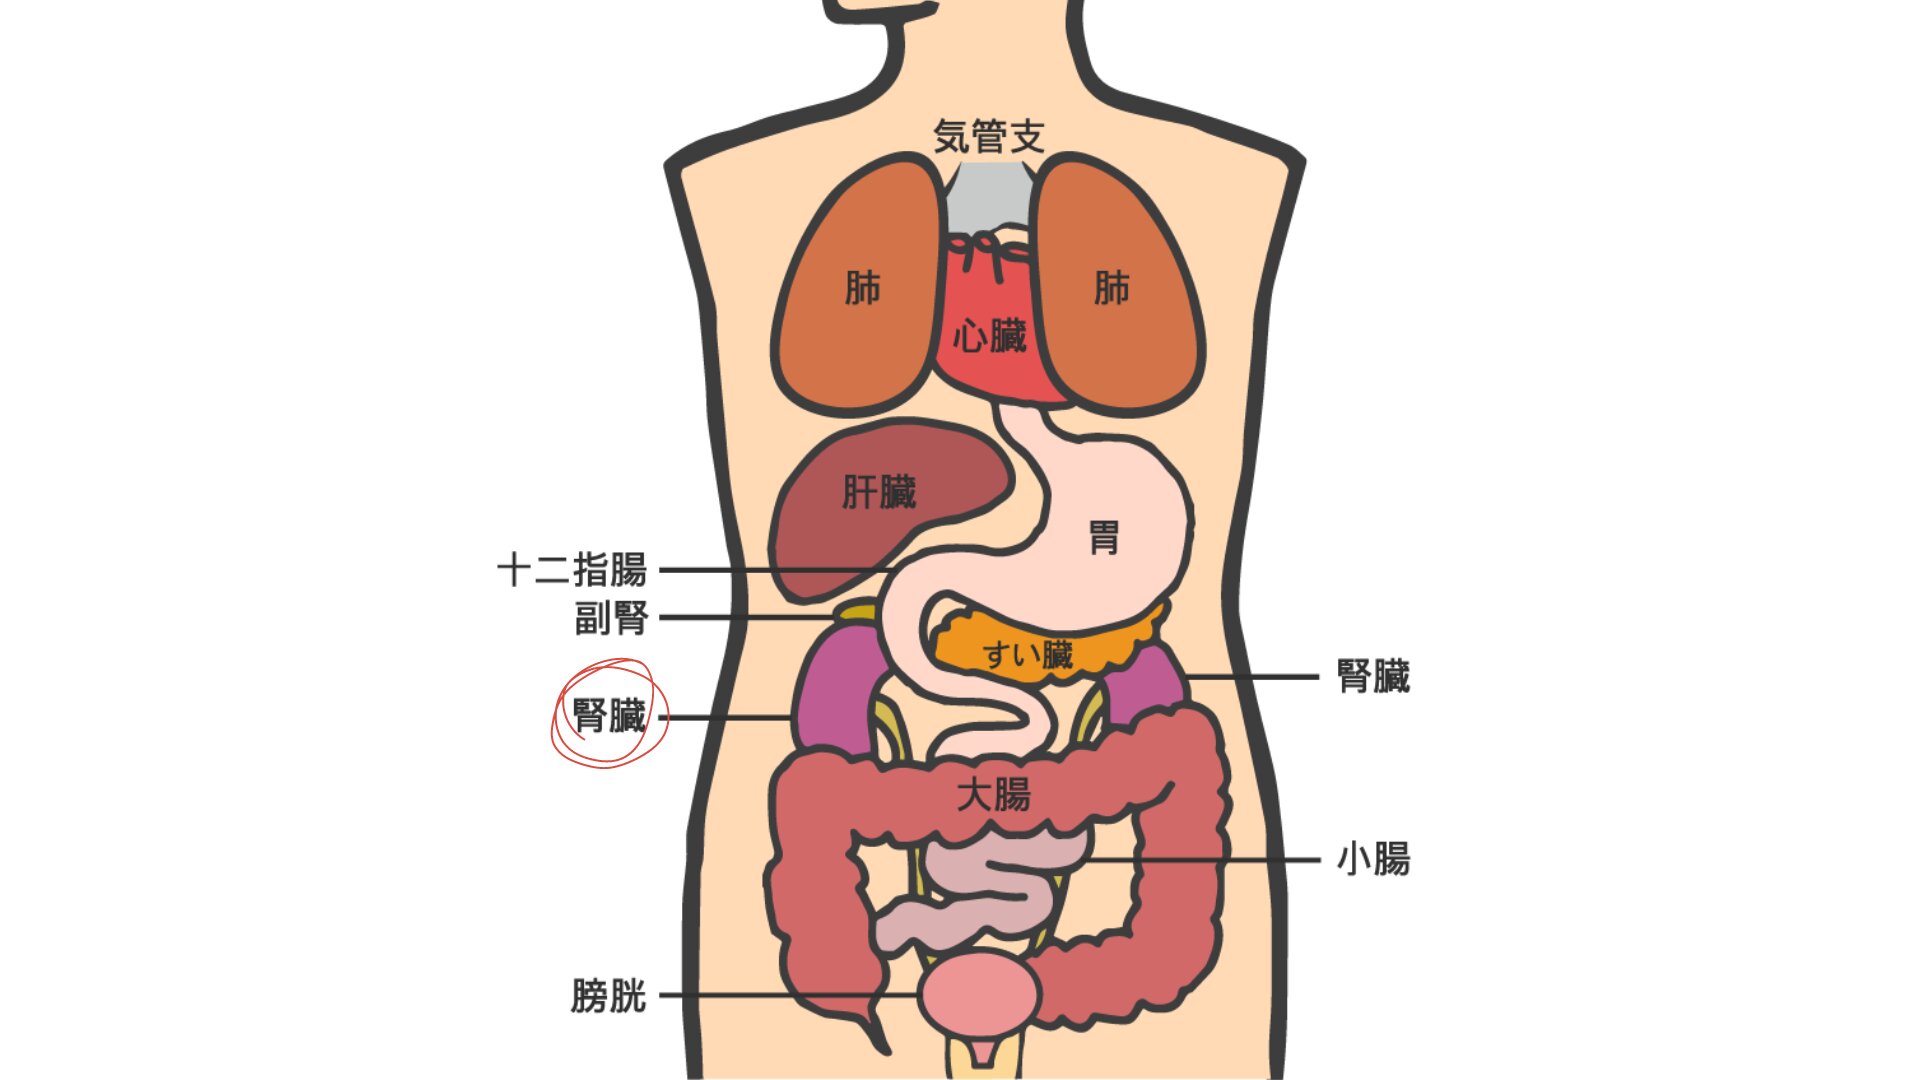 図の紫色の臓器が「腎臓」です